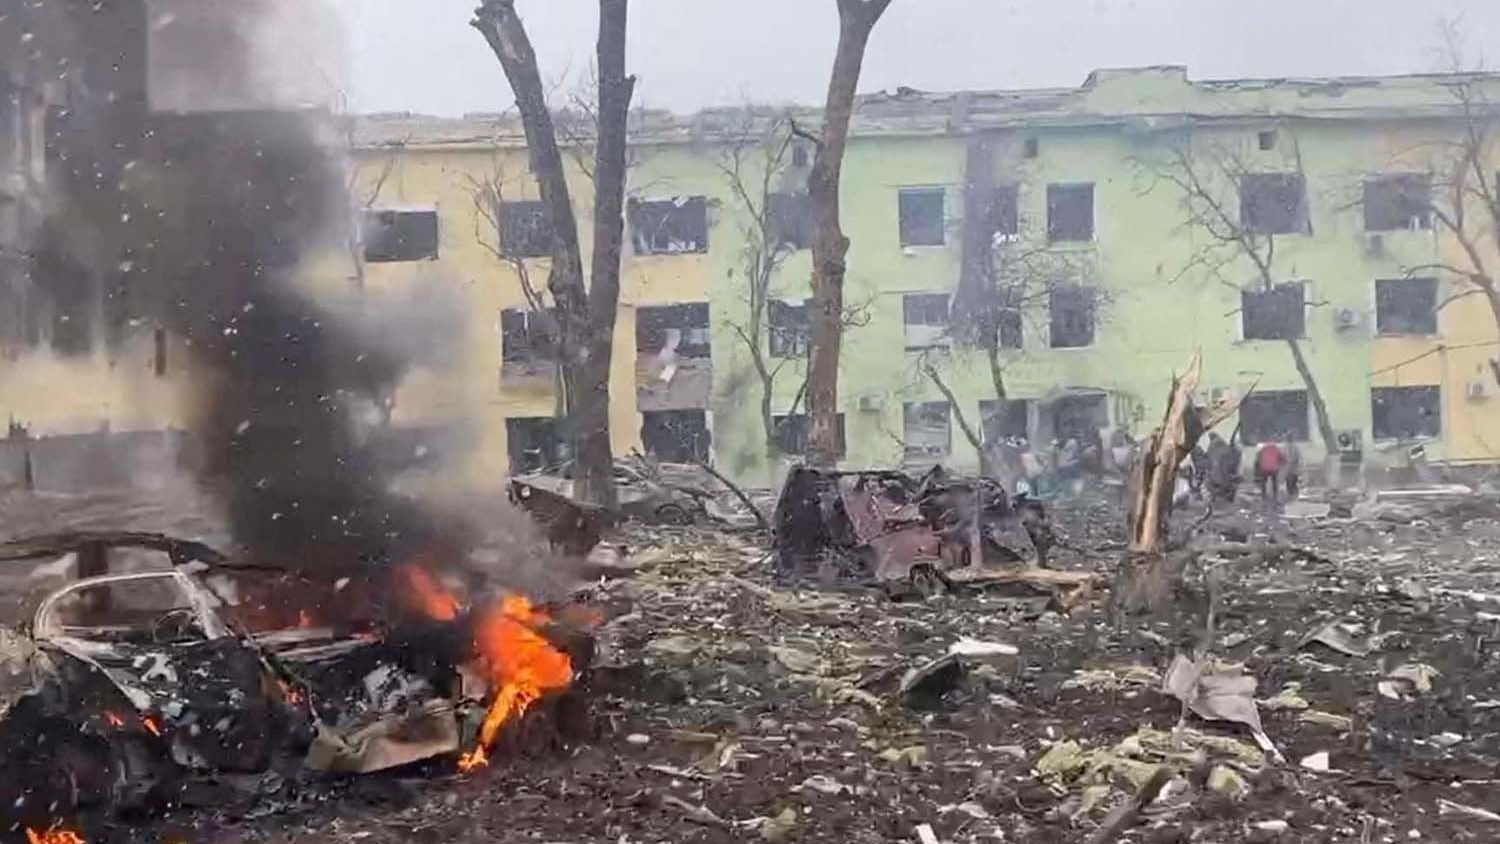 mobil dan bangunan rumah sakit ukraina hancur